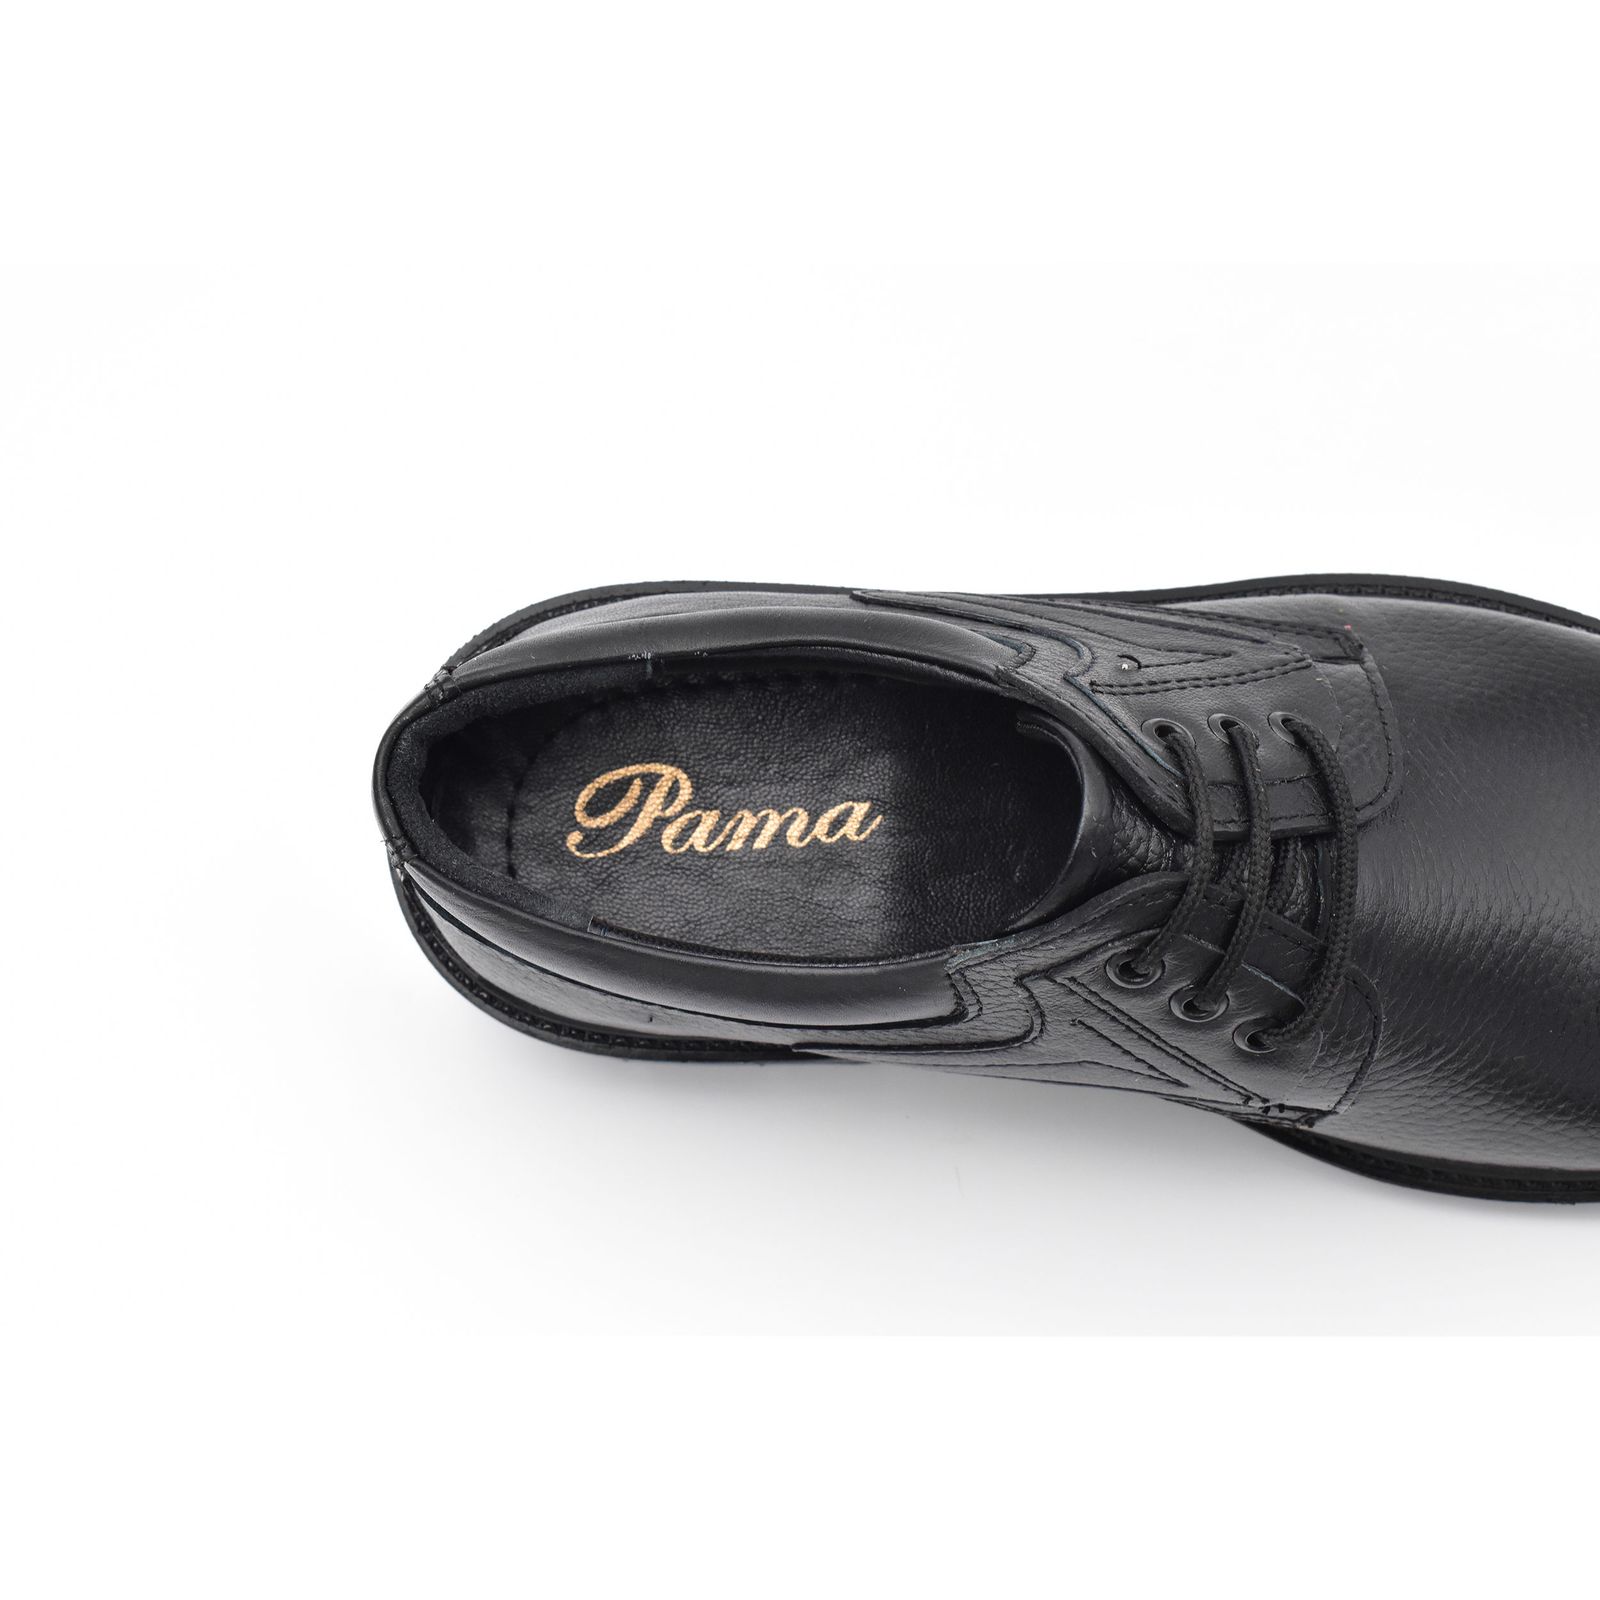 کفش مردانه پاما مدل Morano کد G1174 -  - 10